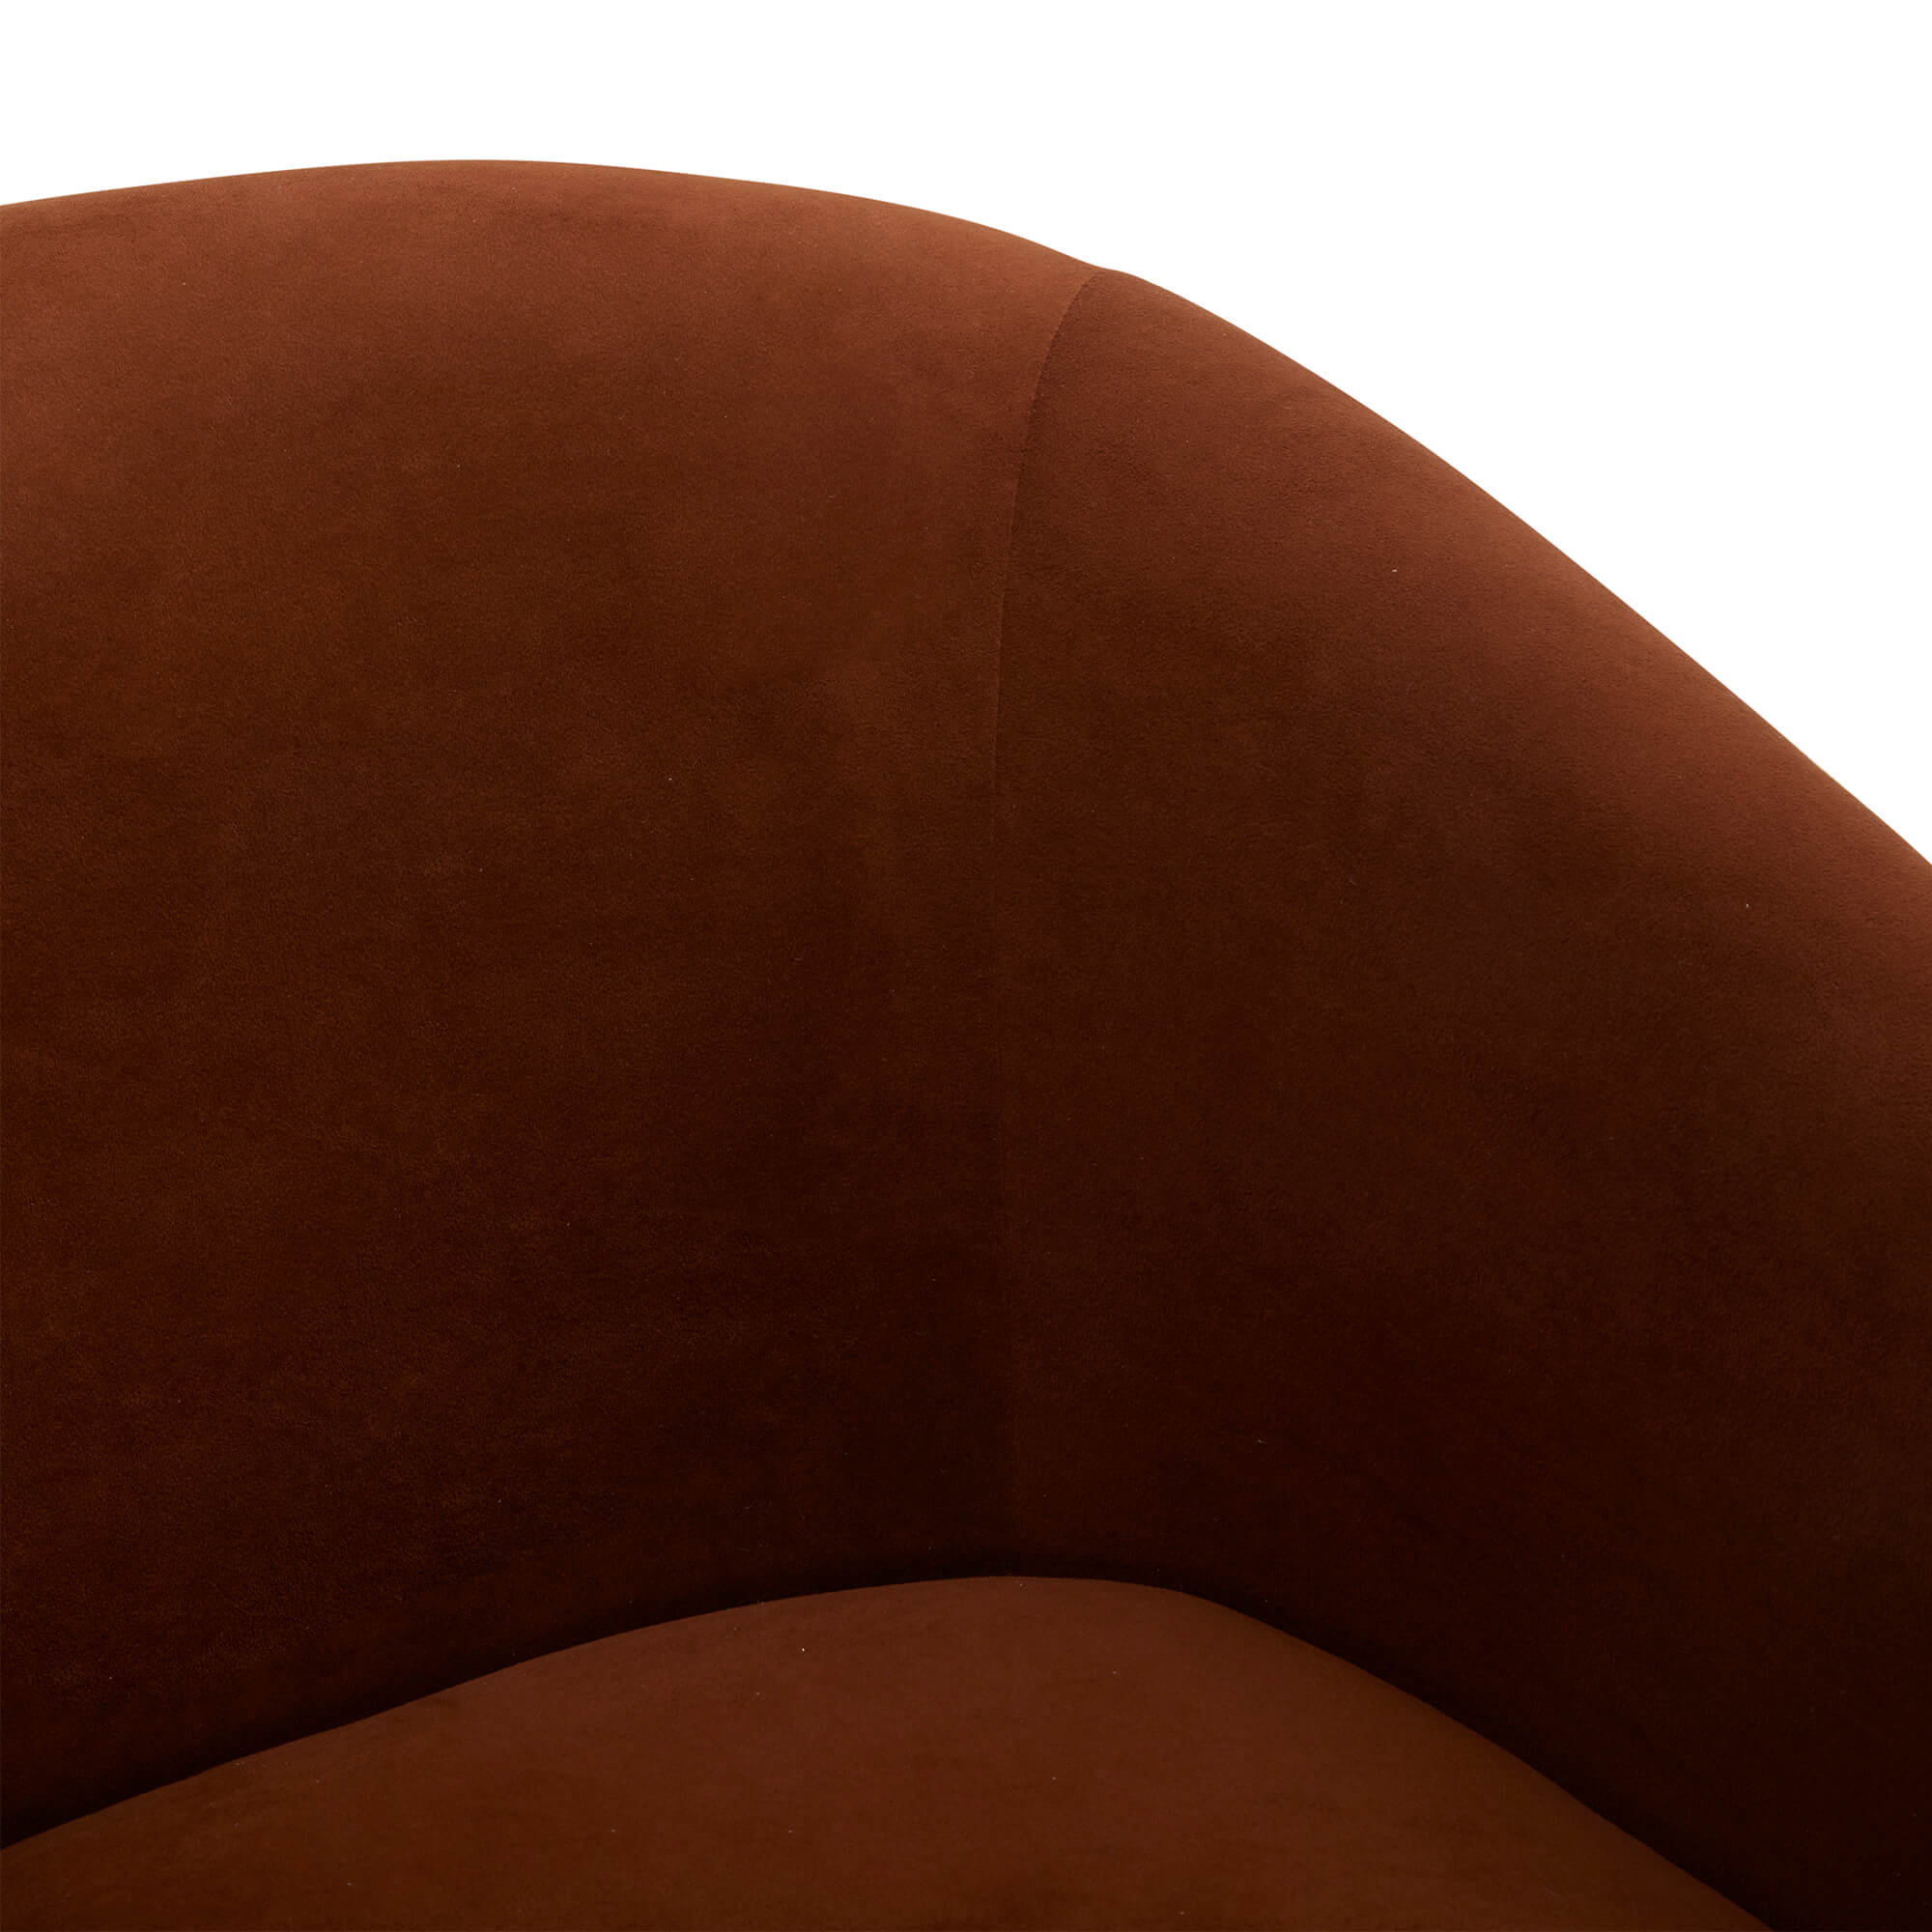 CHITA LIVING-Wren Modern Swivel Accent Chair-Accent Chair-Velvet-Burnt Orange-